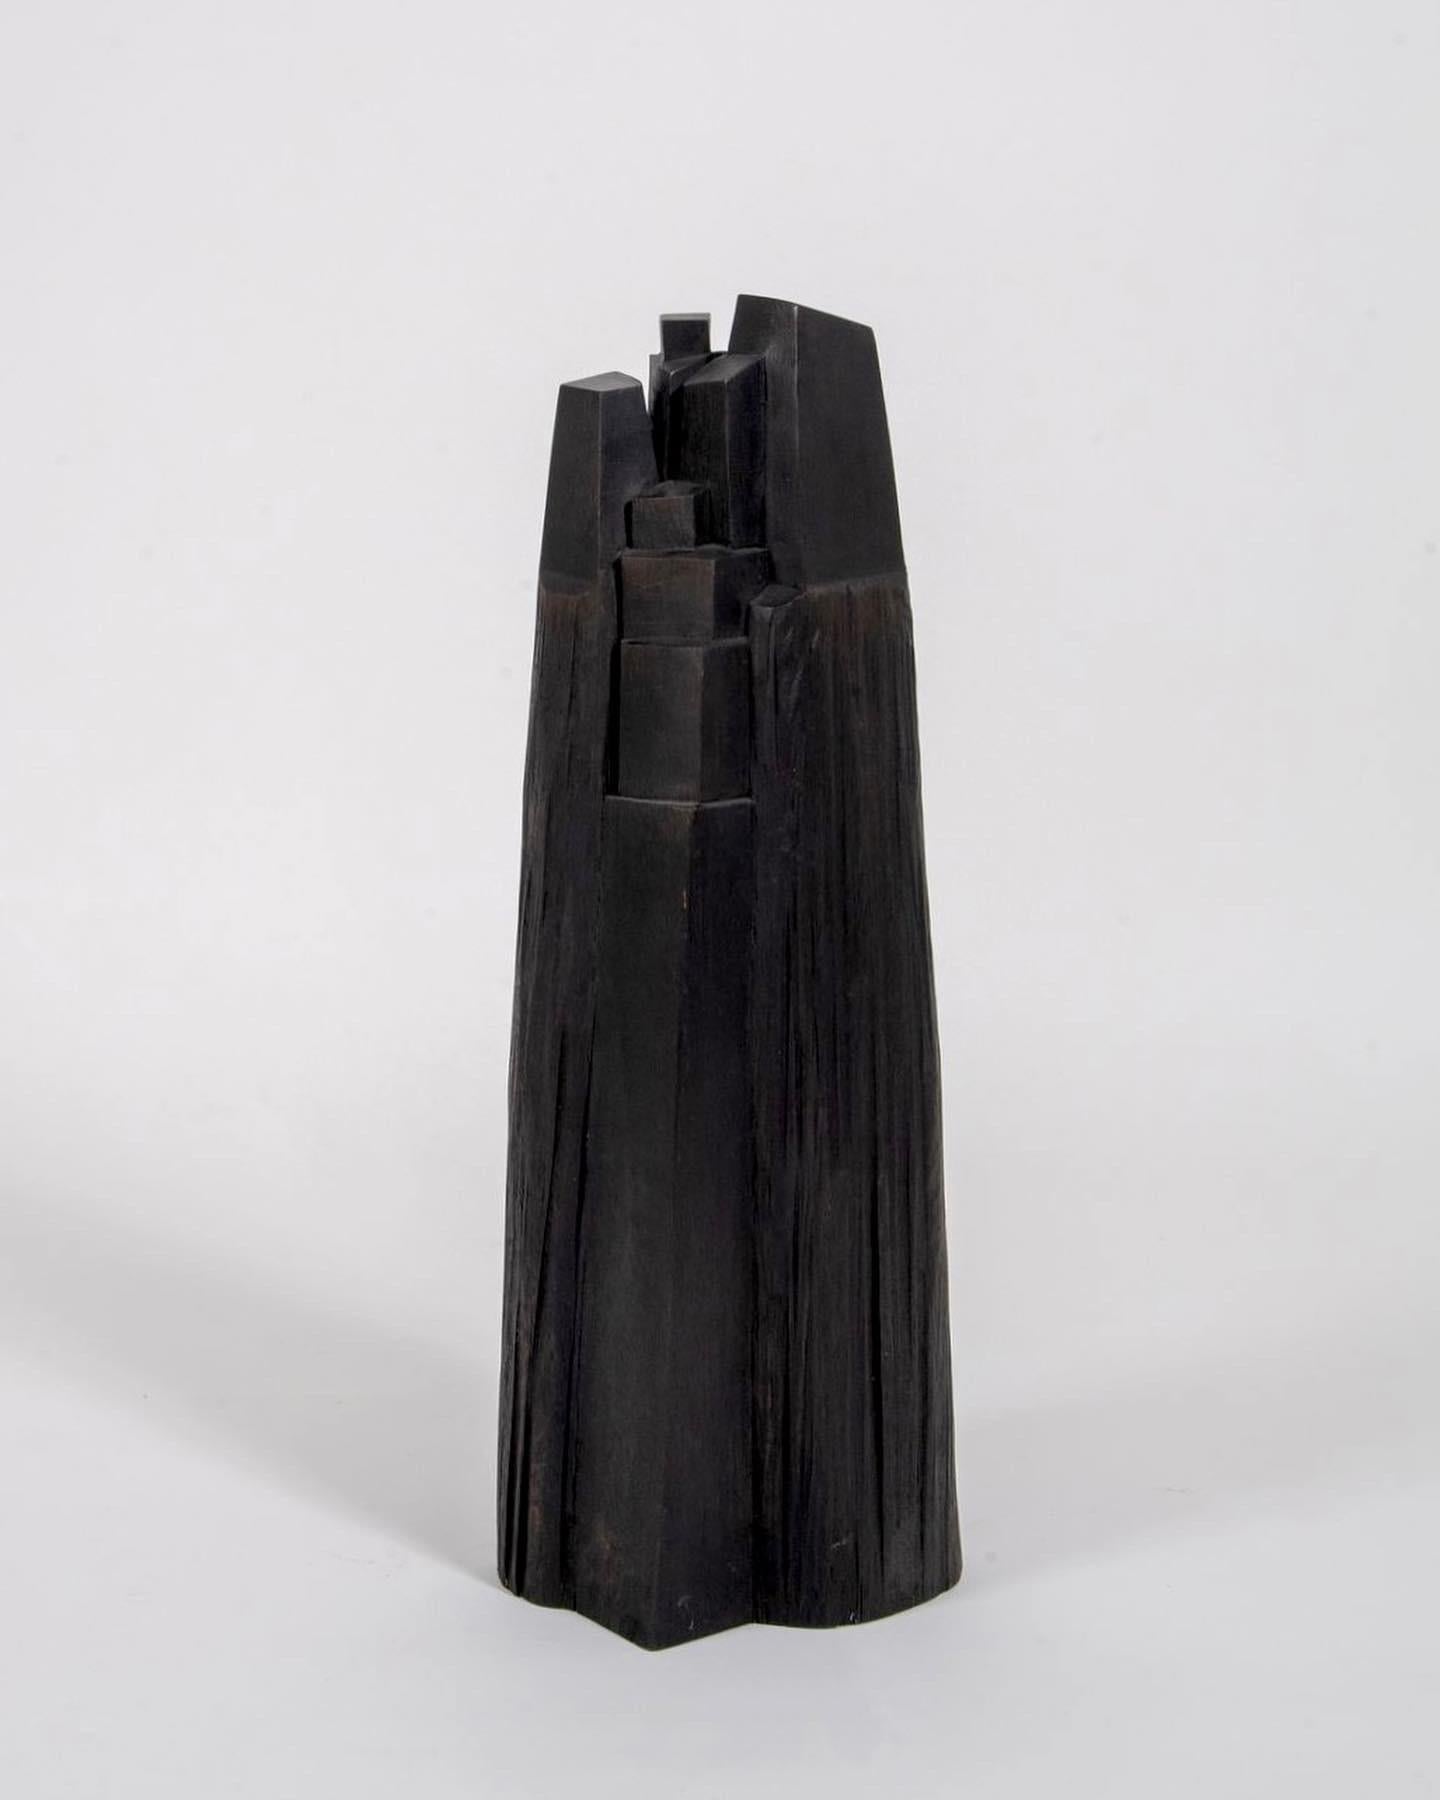 Black Wooden Sculptures 